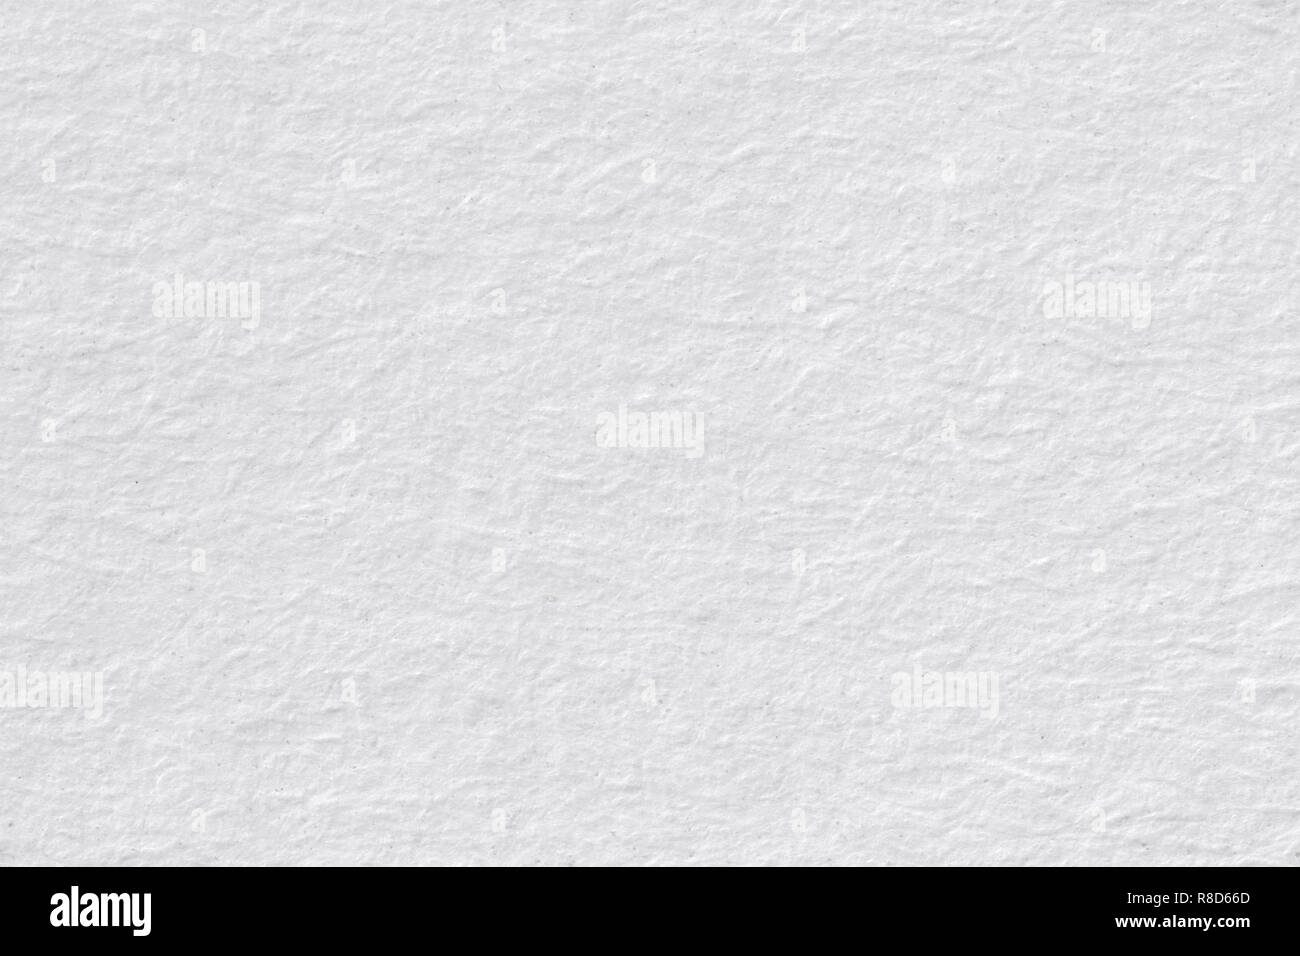 Textura de papel kraft blanco - fondo de hoja de macro Fotografía de stock  - Alamy